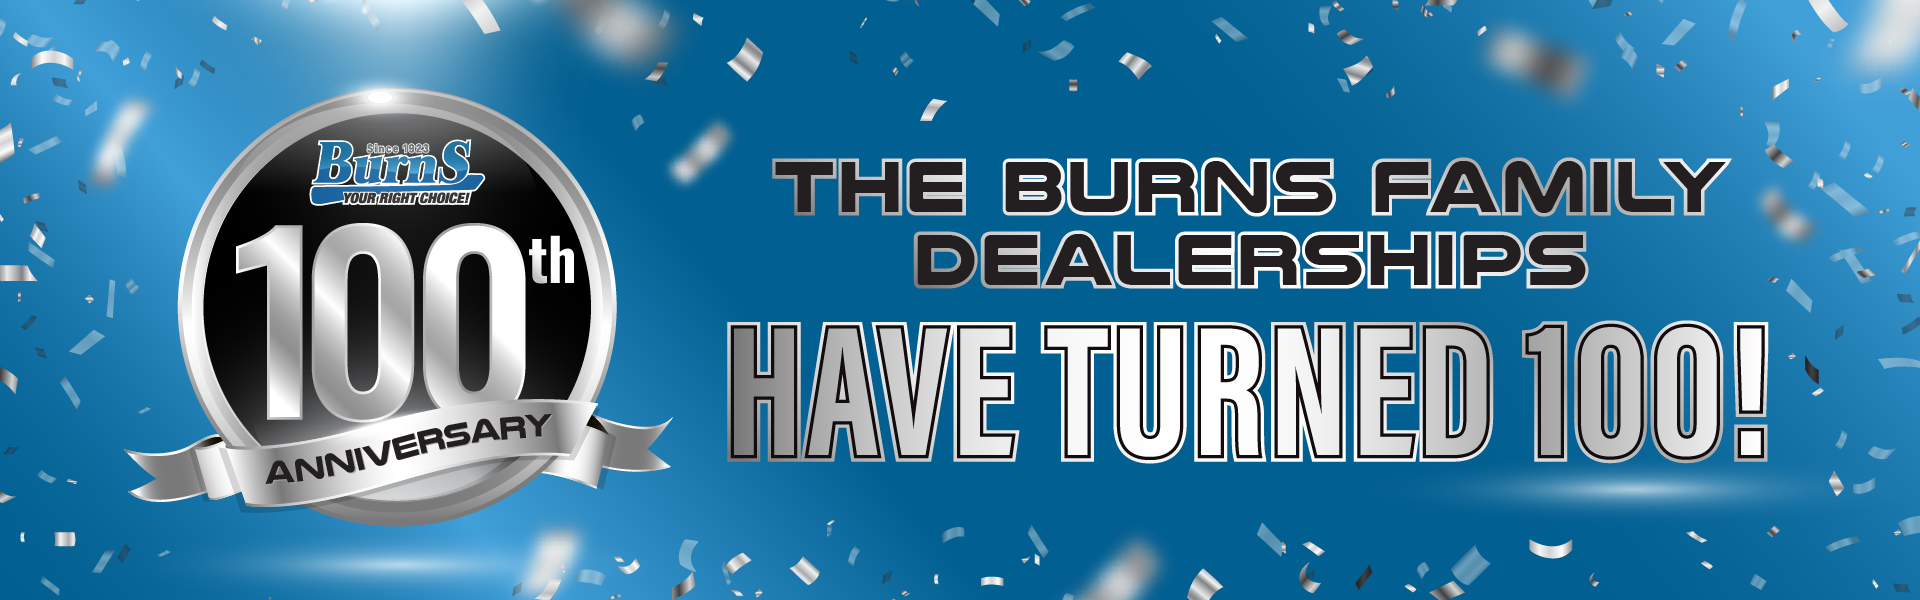 The Burns Family Dealerships Turned 100!